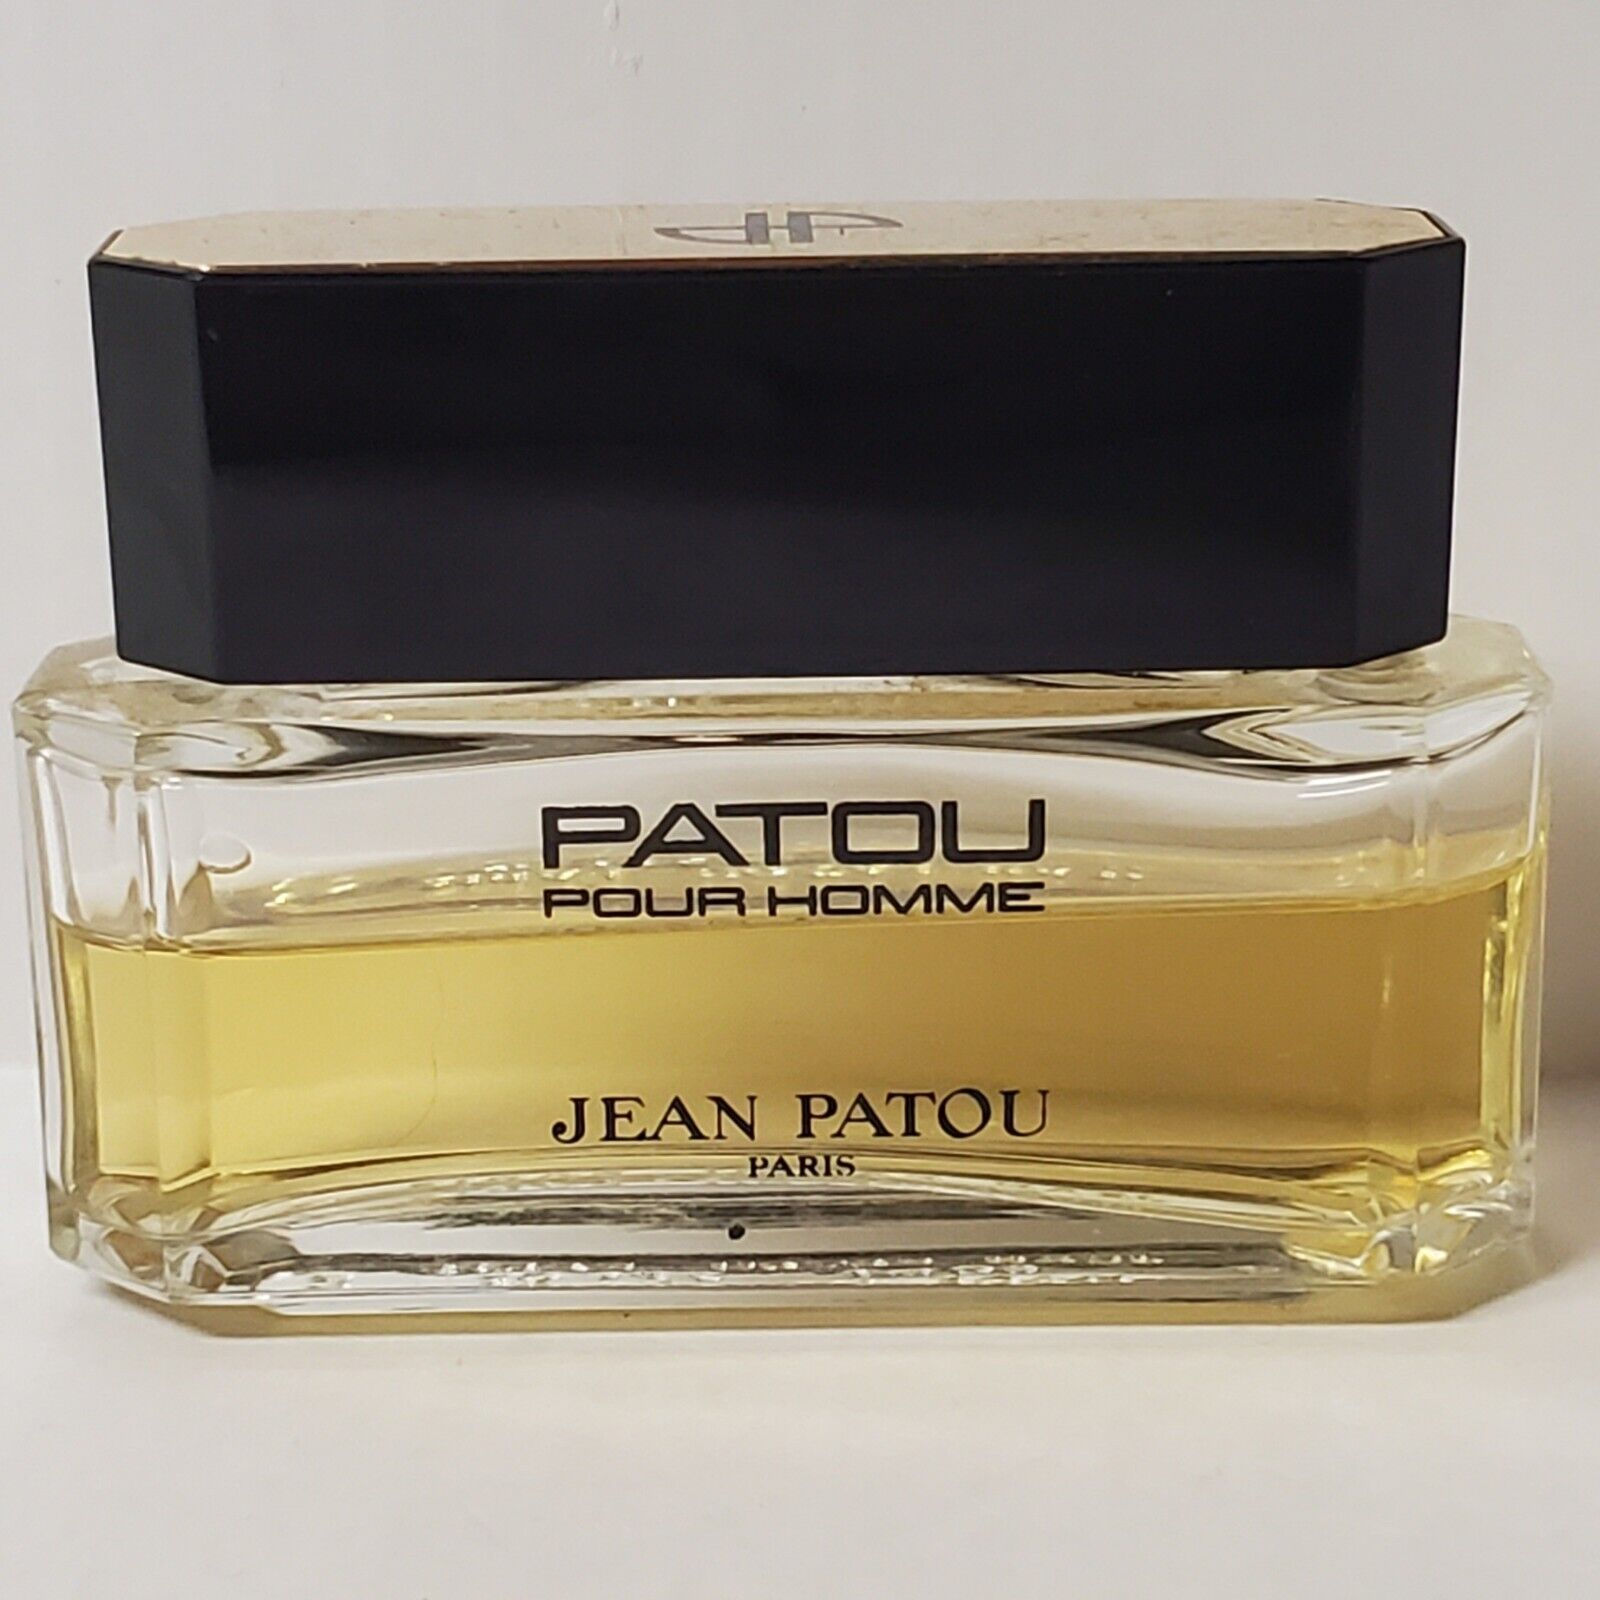 Patou Pour Homme Eau de Toilette by Jean Patou 2 oz Vintage Men\'s Extremely Rare